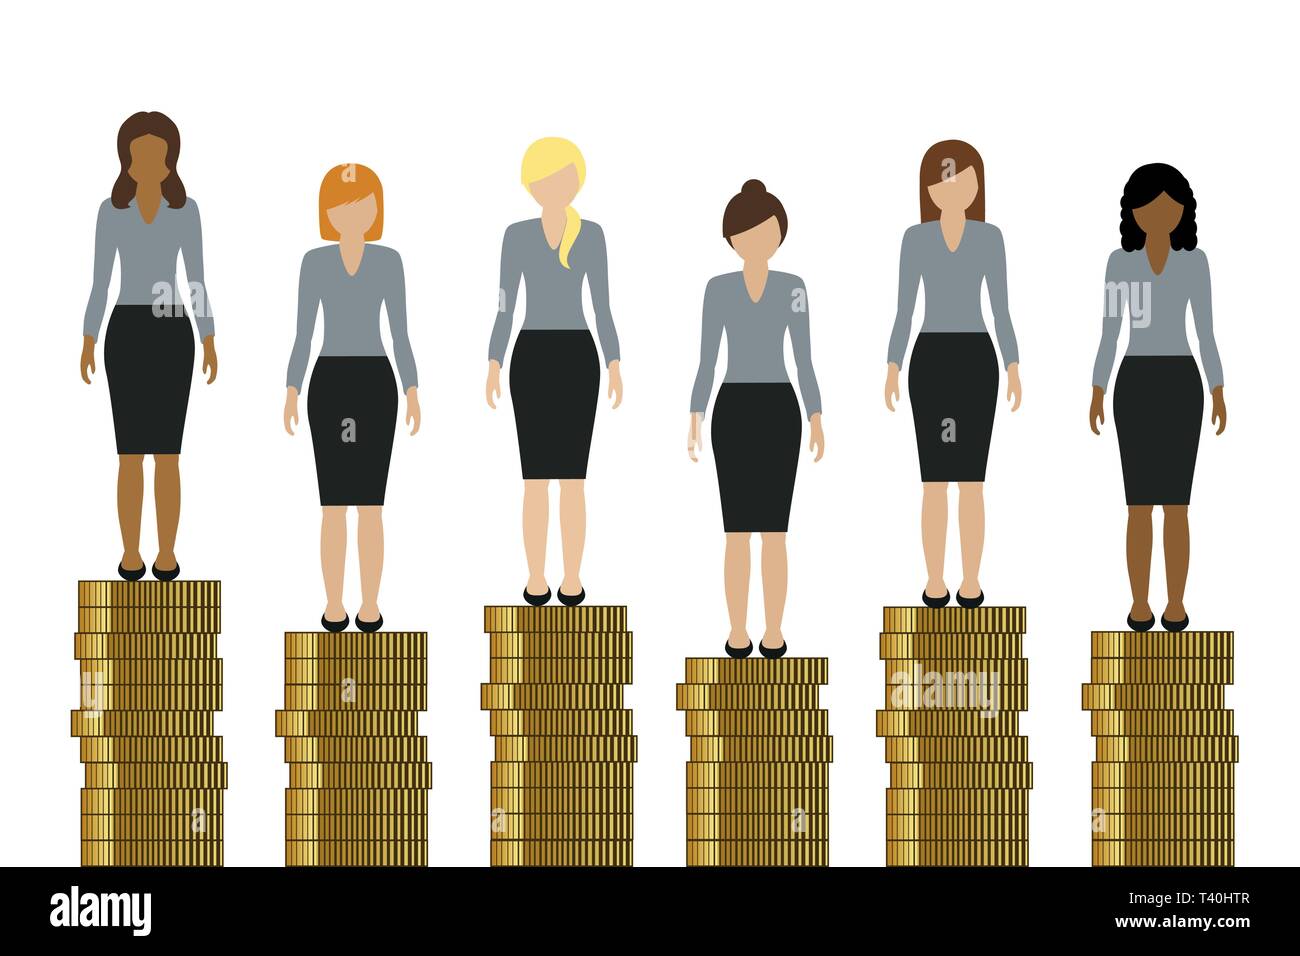 Frauen mit unterschiedlichem Einkommen stehen auf goldenen Münzen Finanzen konzept Vektor-illustration EPS 10. Stock Vektor